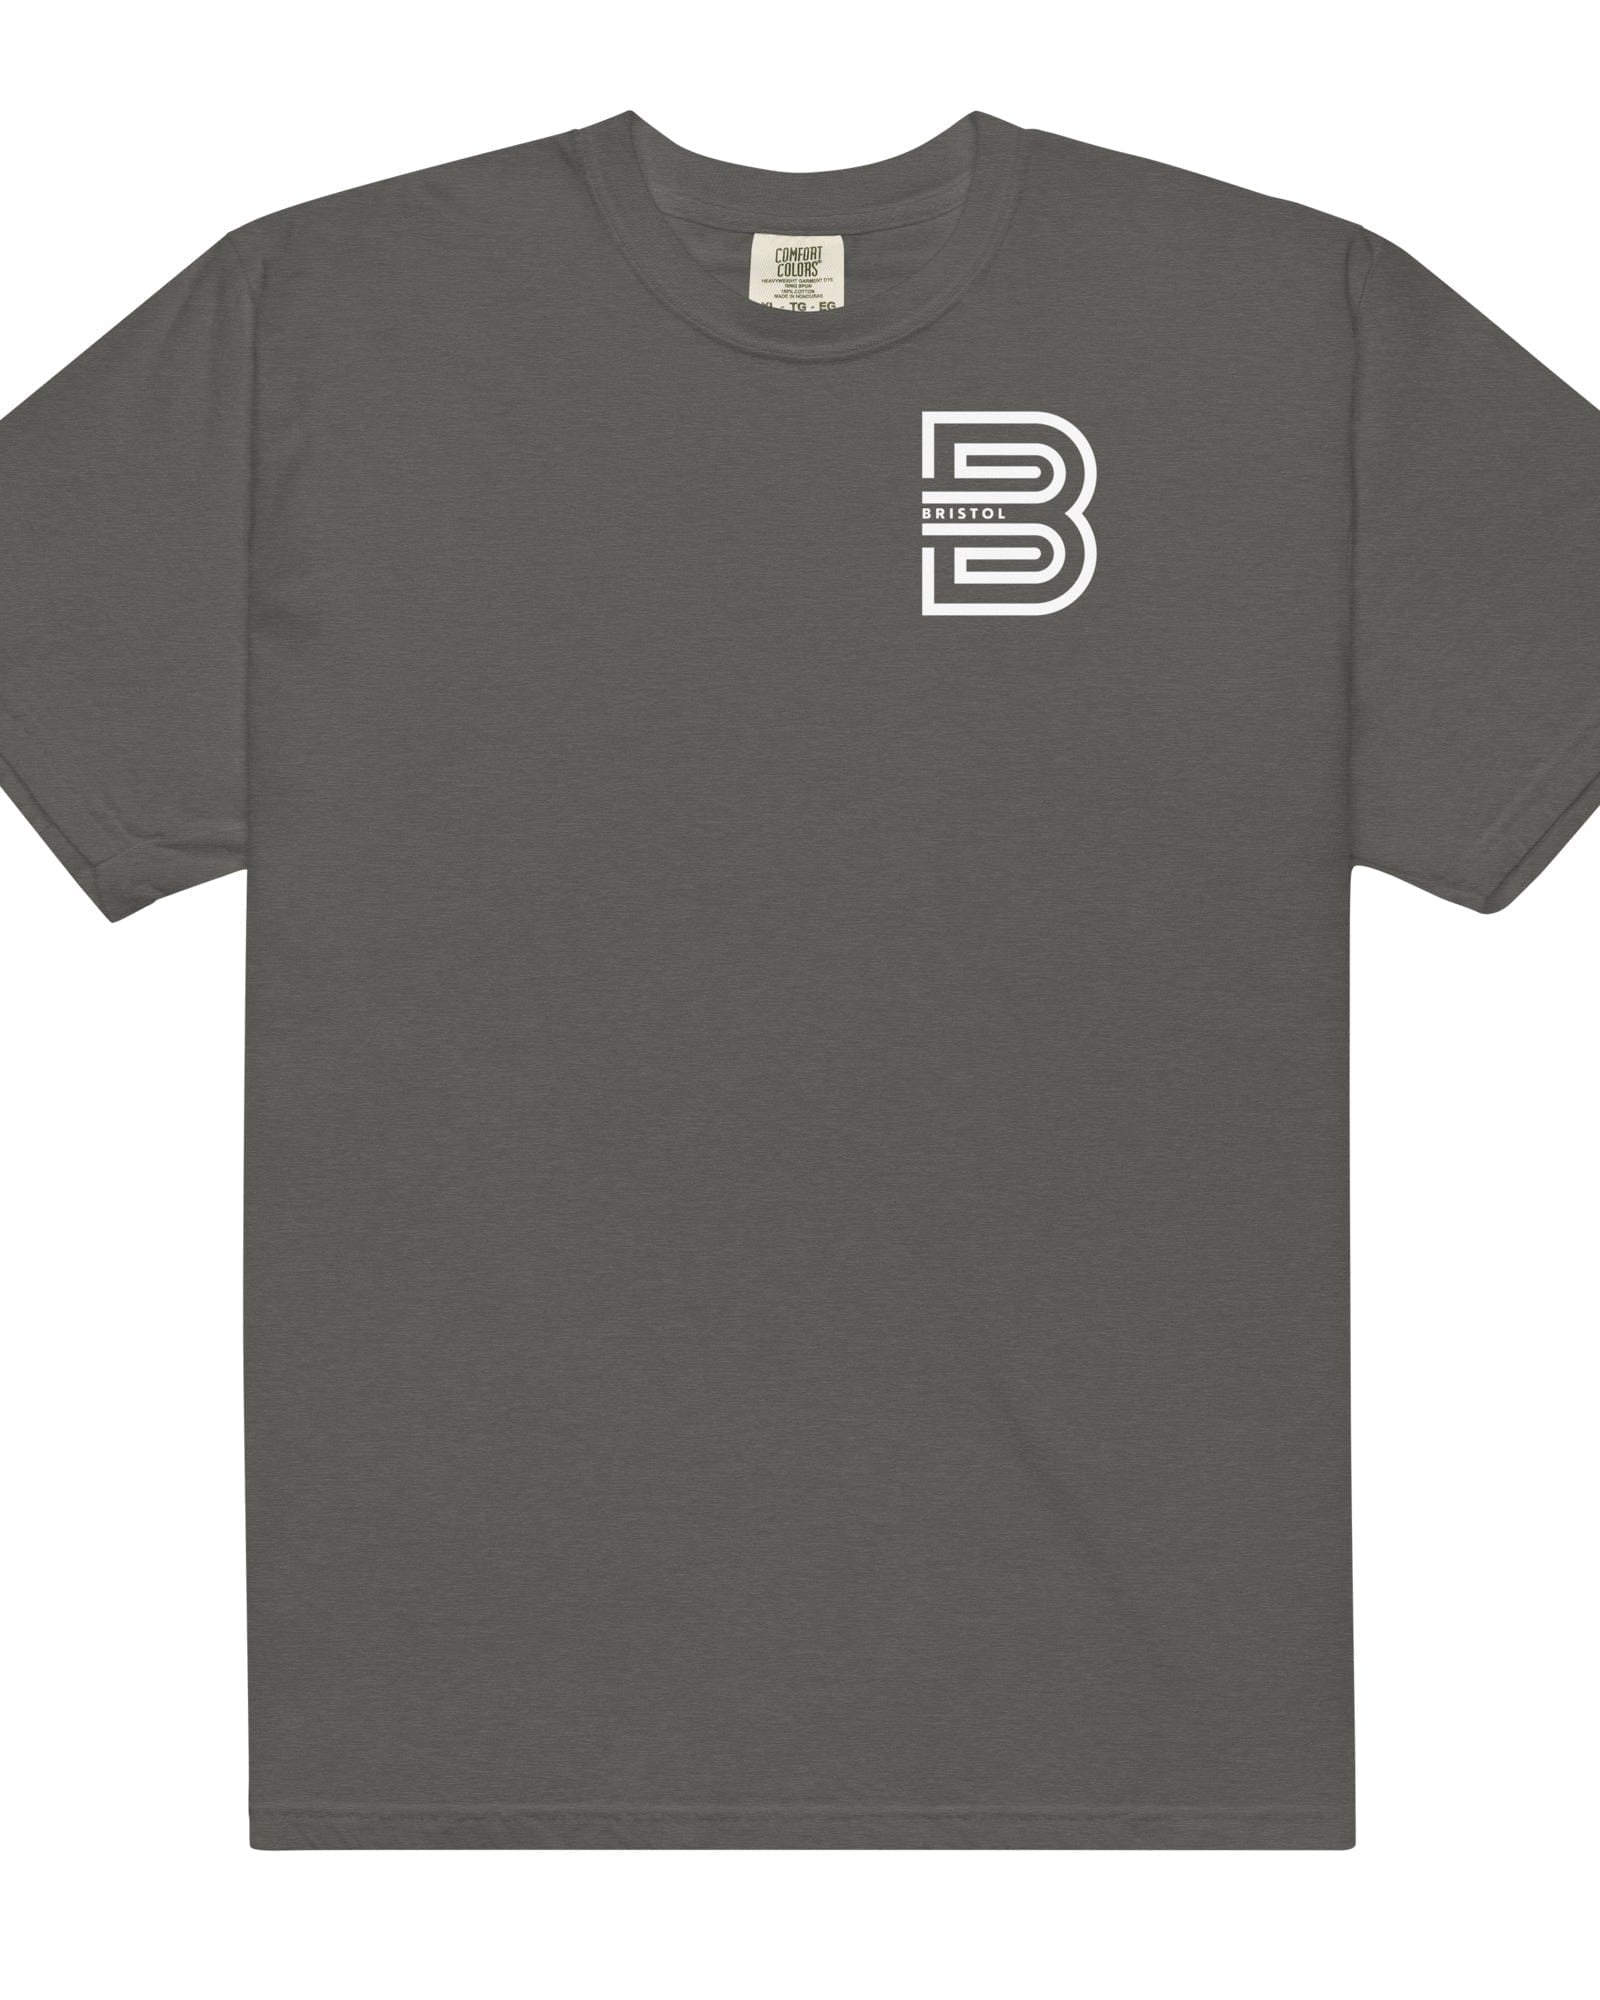 Bristol B T-shirt | Garment-dyed Heavyweight Pepper / S Shirts & Tops Jolly & Goode